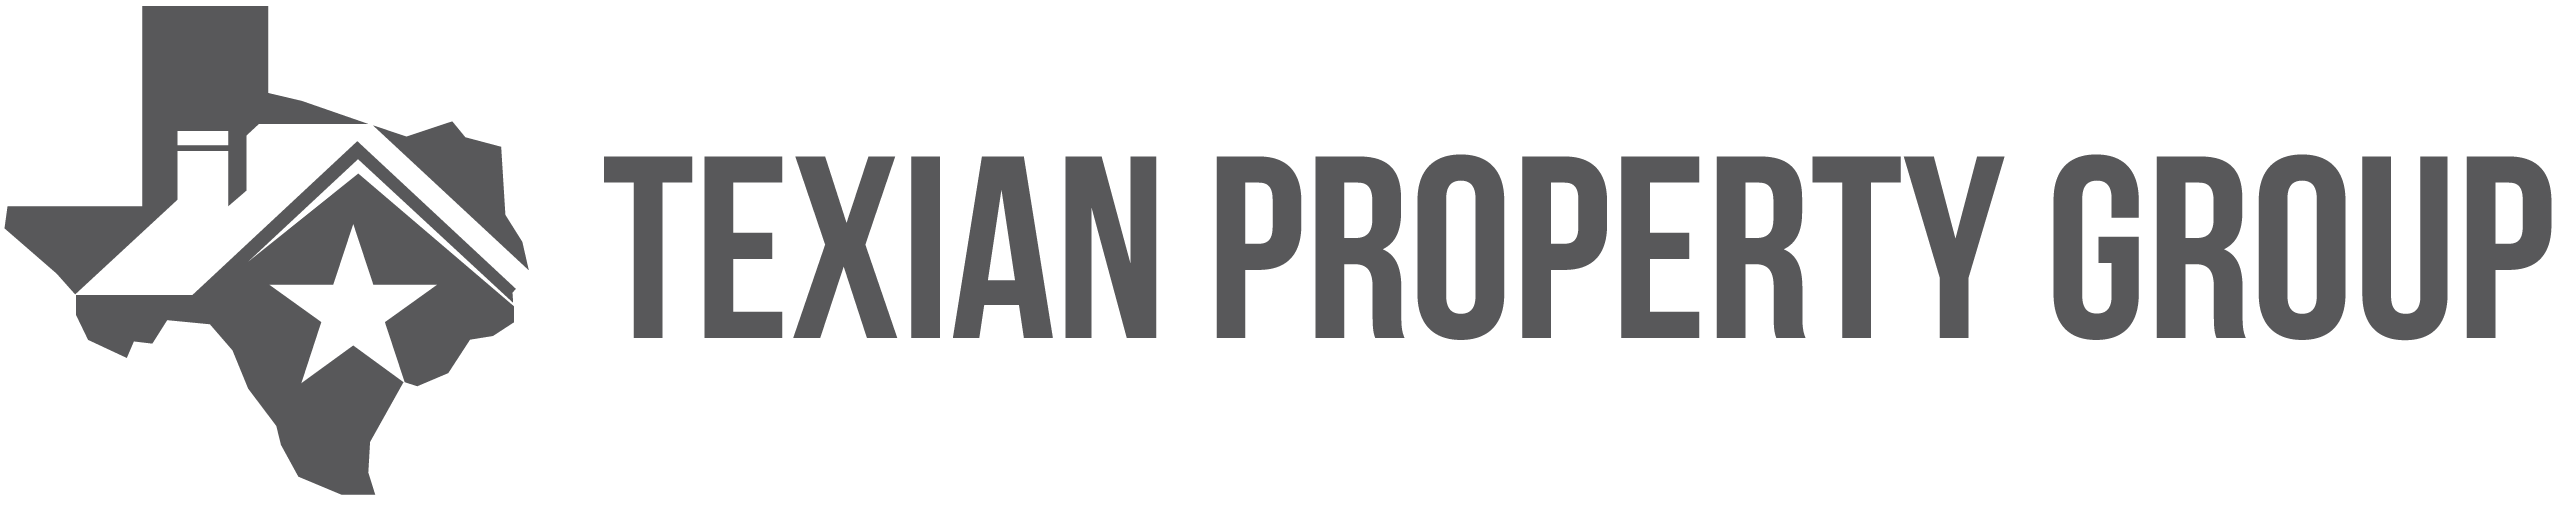 Texian Property Group logo